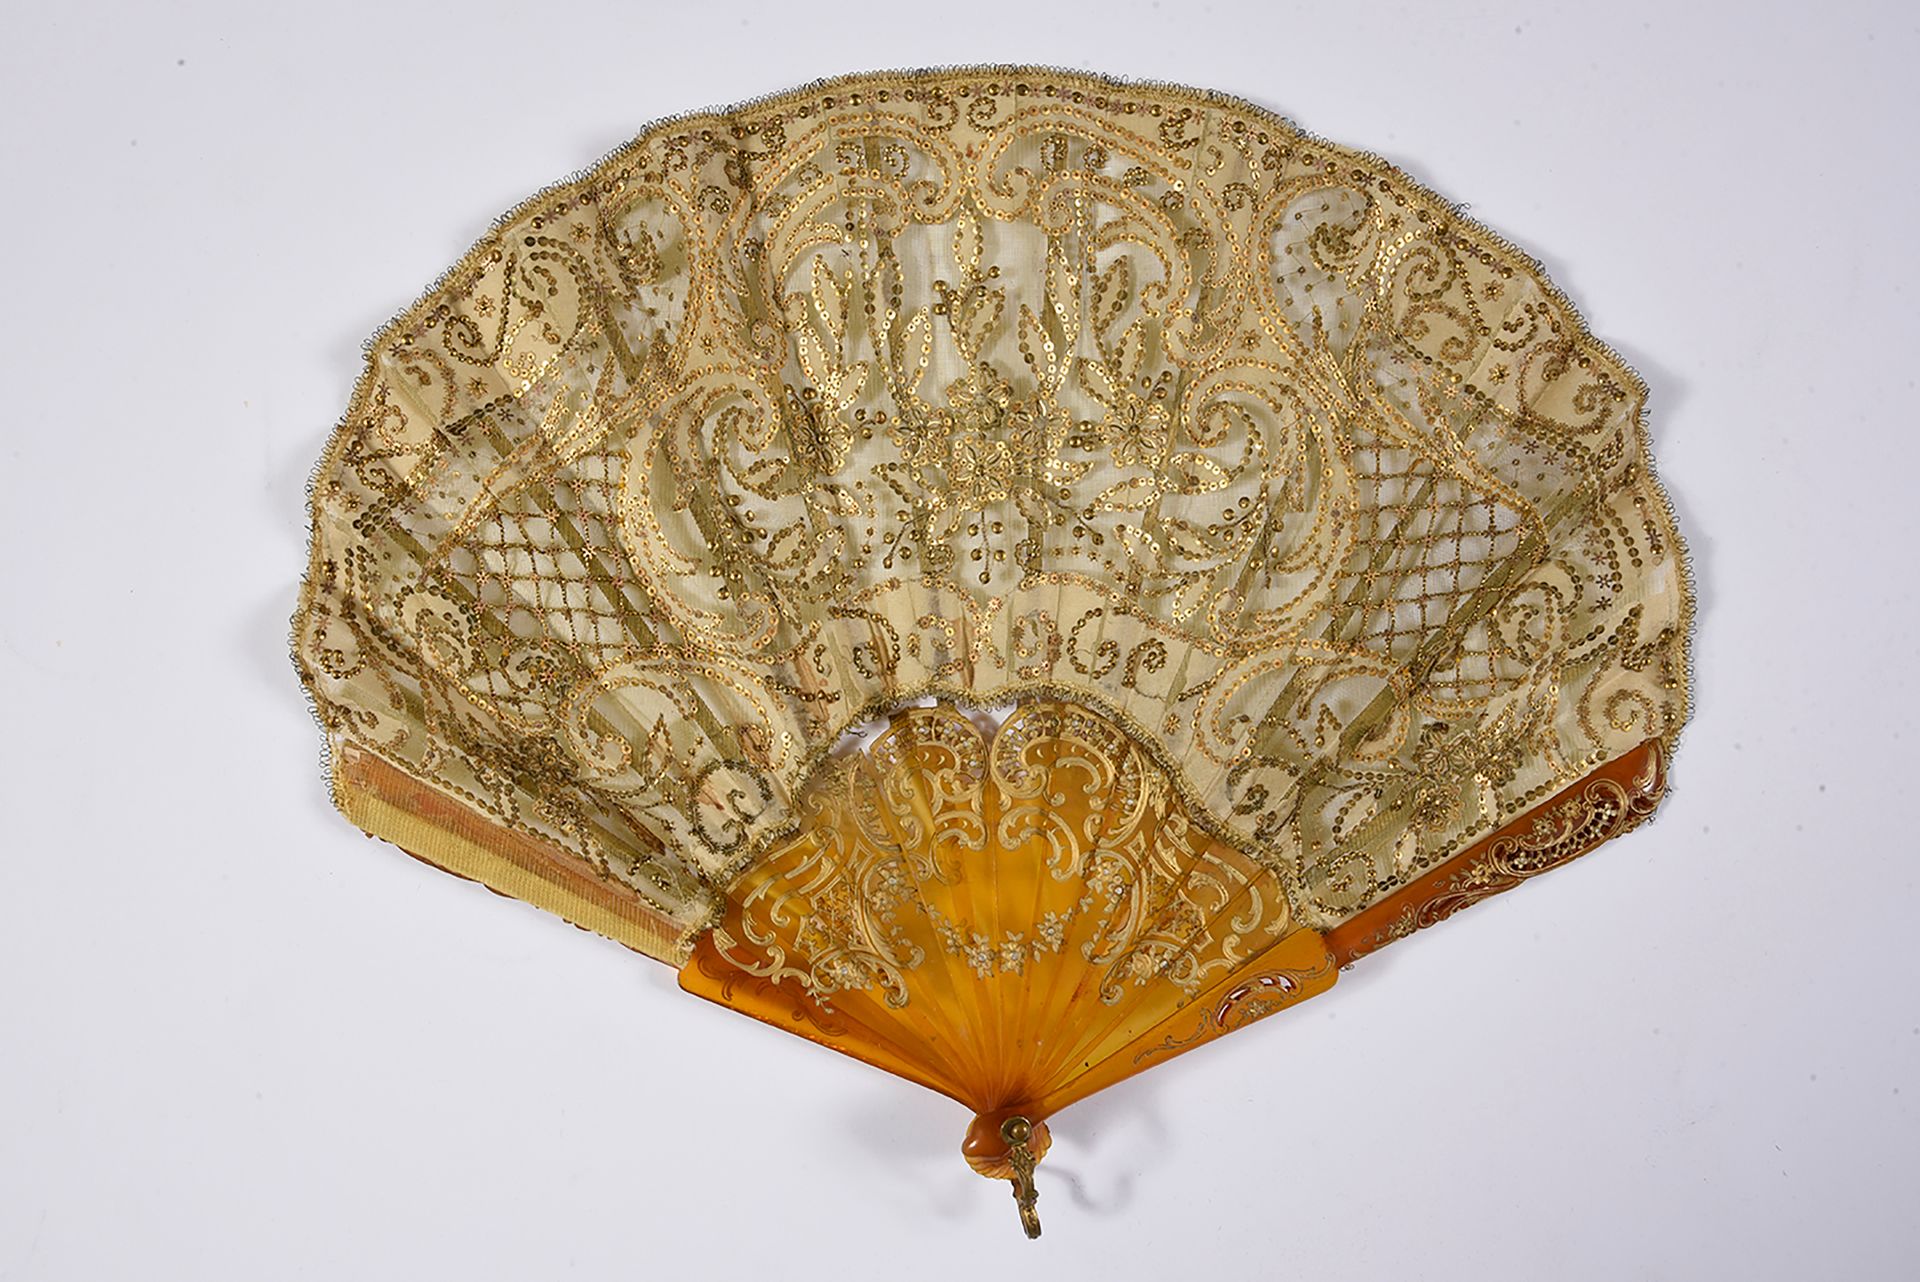 Null 第一帝国精神，欧洲，约1900年
折叠的扇子，气球形状，薄纱和丝叶装饰的花朵用金色亮片加强。
喇叭座。支架。
高约。25厘米（磨损，以及一缕意外）。